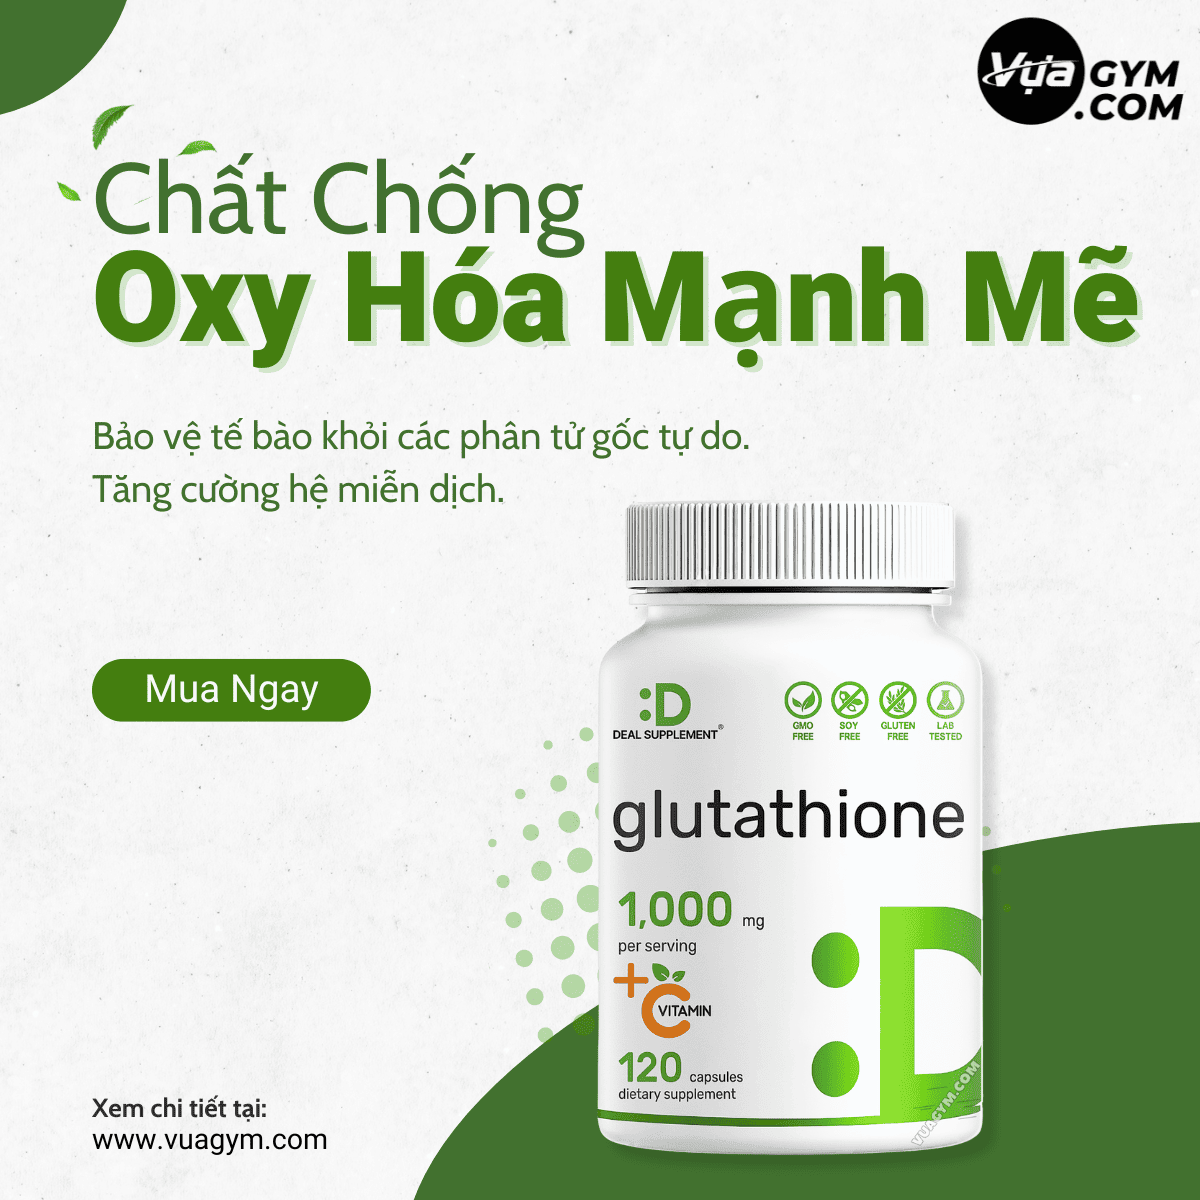 Deal Supplement - Glutathione 1000mg / Serving + Vitamin C (120 viên) - deal supplement glutathione 1000mg vitamin c 120 vien motavuagym